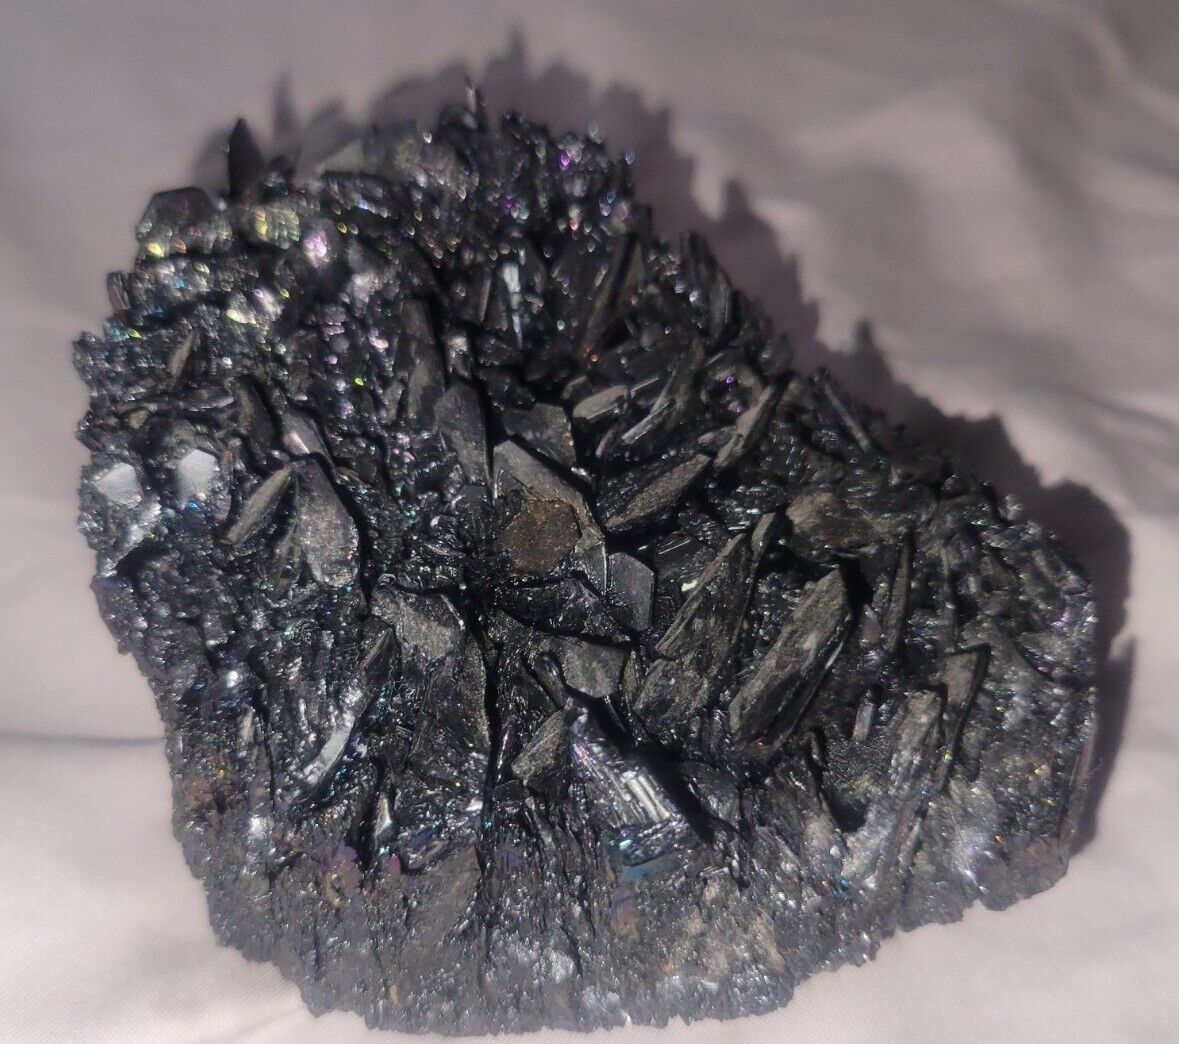 14oz Raw Moissanite Specimen Silicium Carburandum Crystals 5x3x2.5in Very Rare